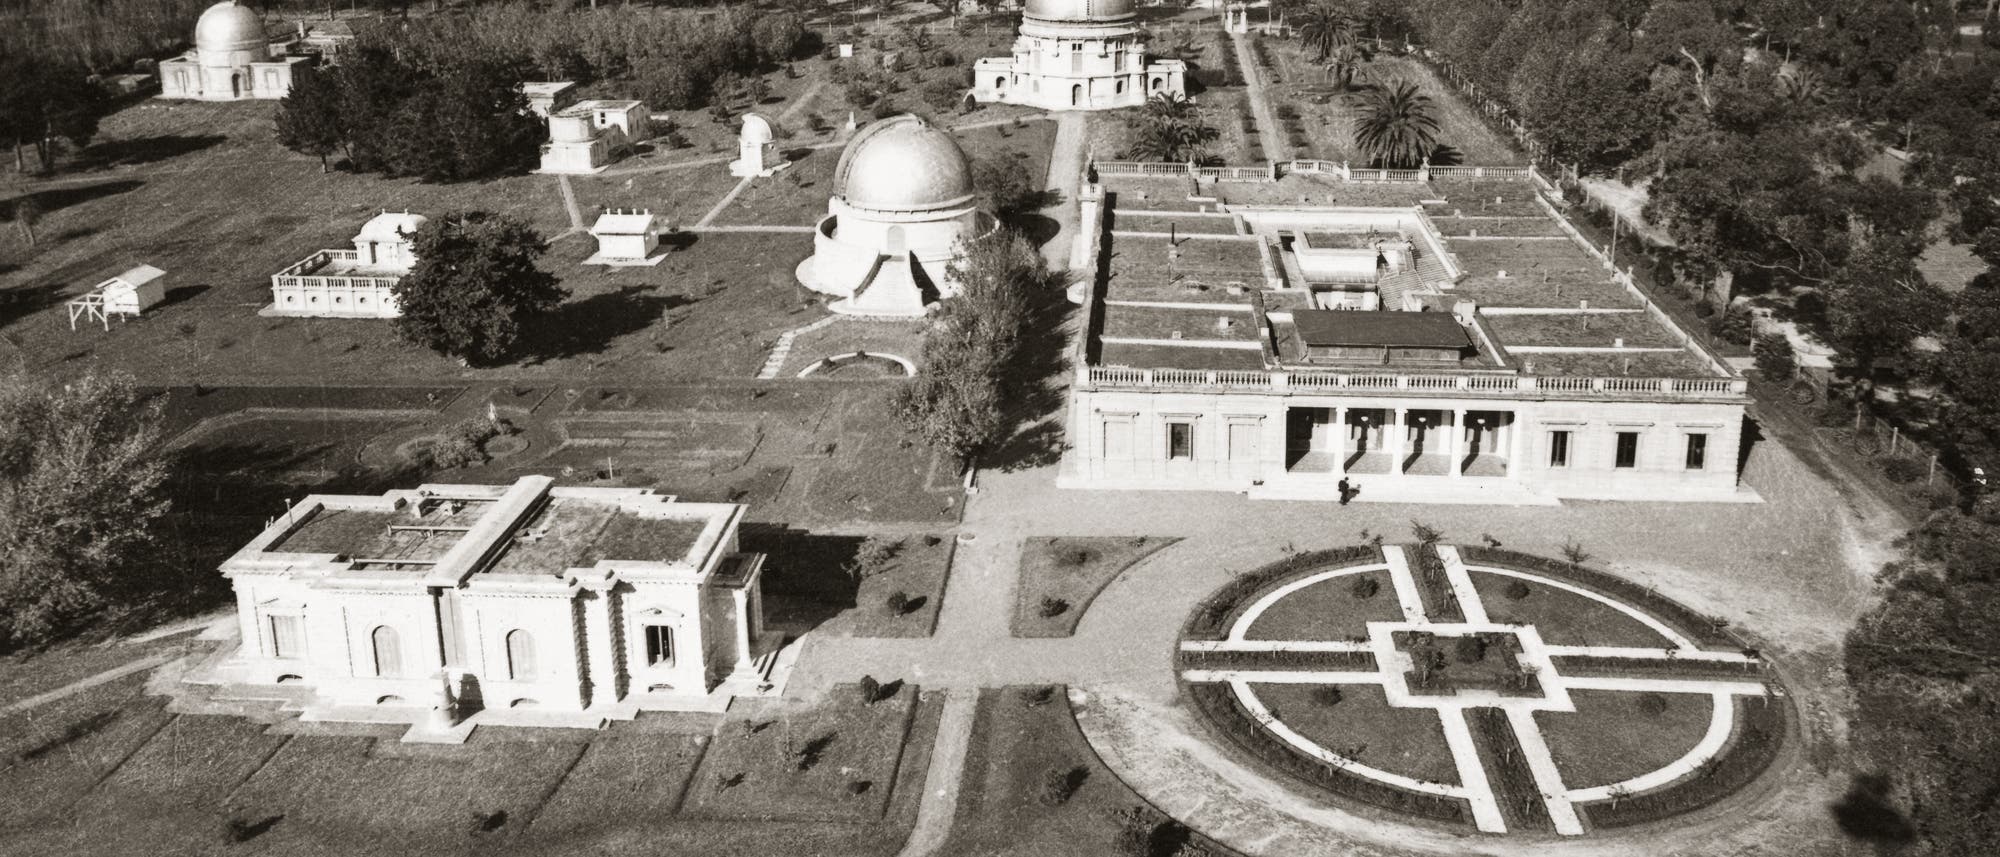 Historische Luftaufnahme des Observatoriums La Plata